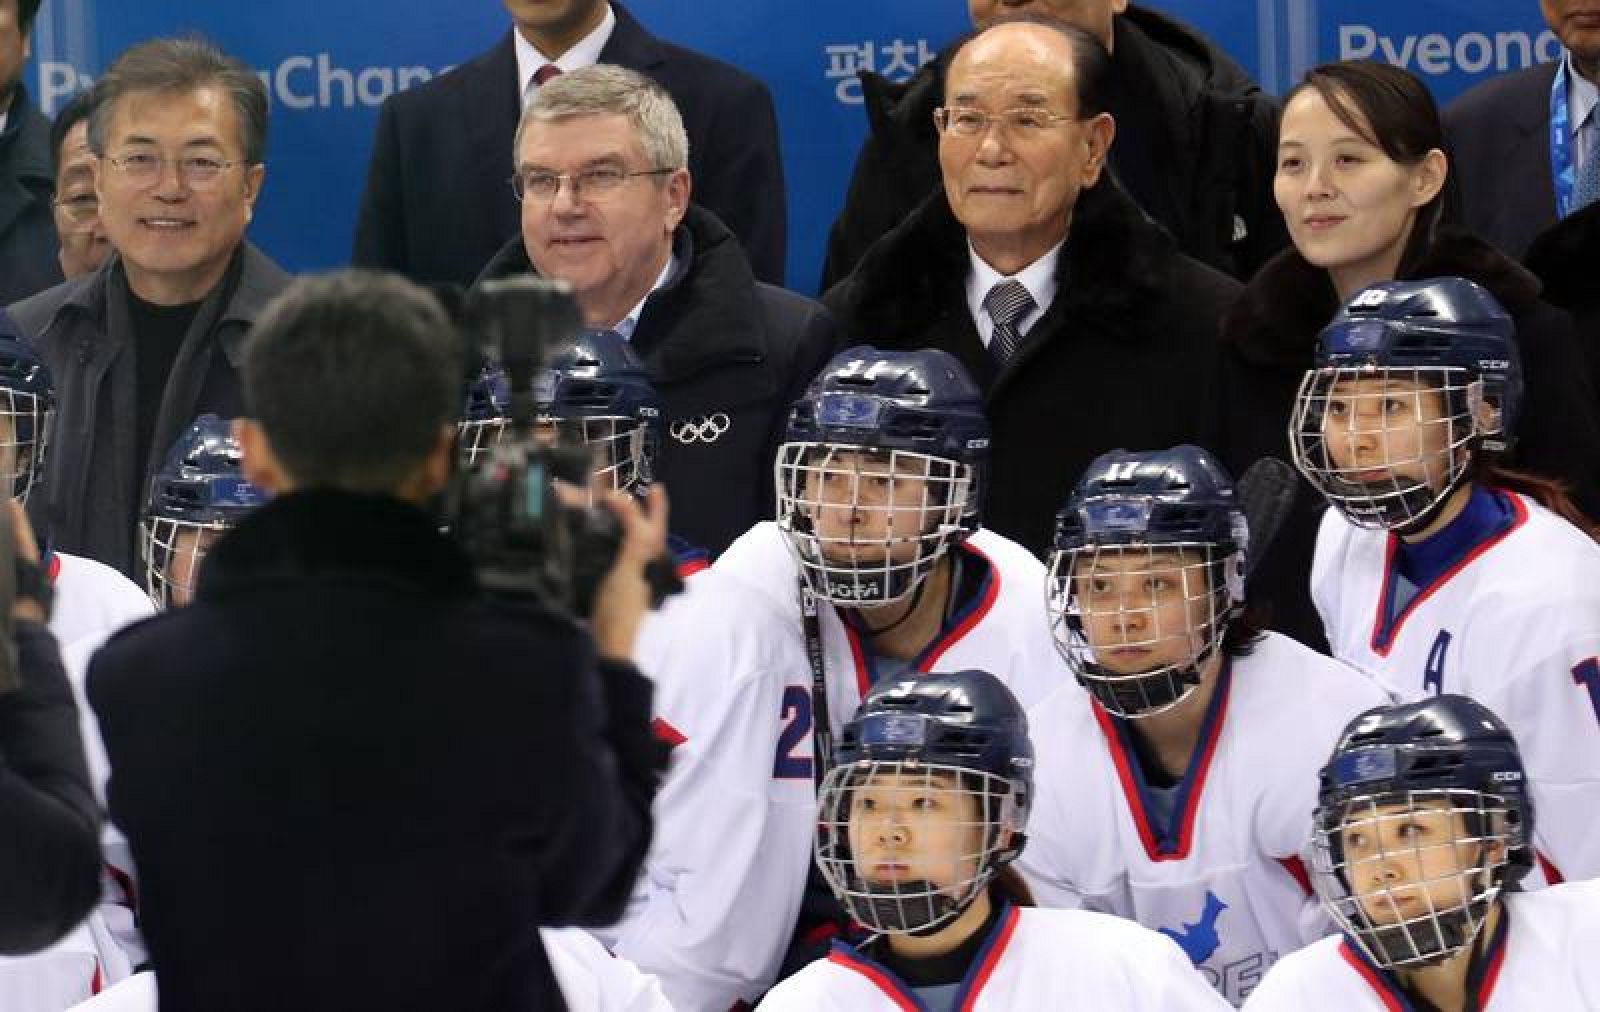 El equipo unificado de Corea de hockey sobre hielo femenino posa con las autoridades de fondo: de izquierda a derecha, el presidente sucoreano Moon Jae-in, el del COI, Thomas Bach; y la hermana del líder  norcoreano y el presidente de su Parlamento, Kim Young-nam y Kim Yo-jong.